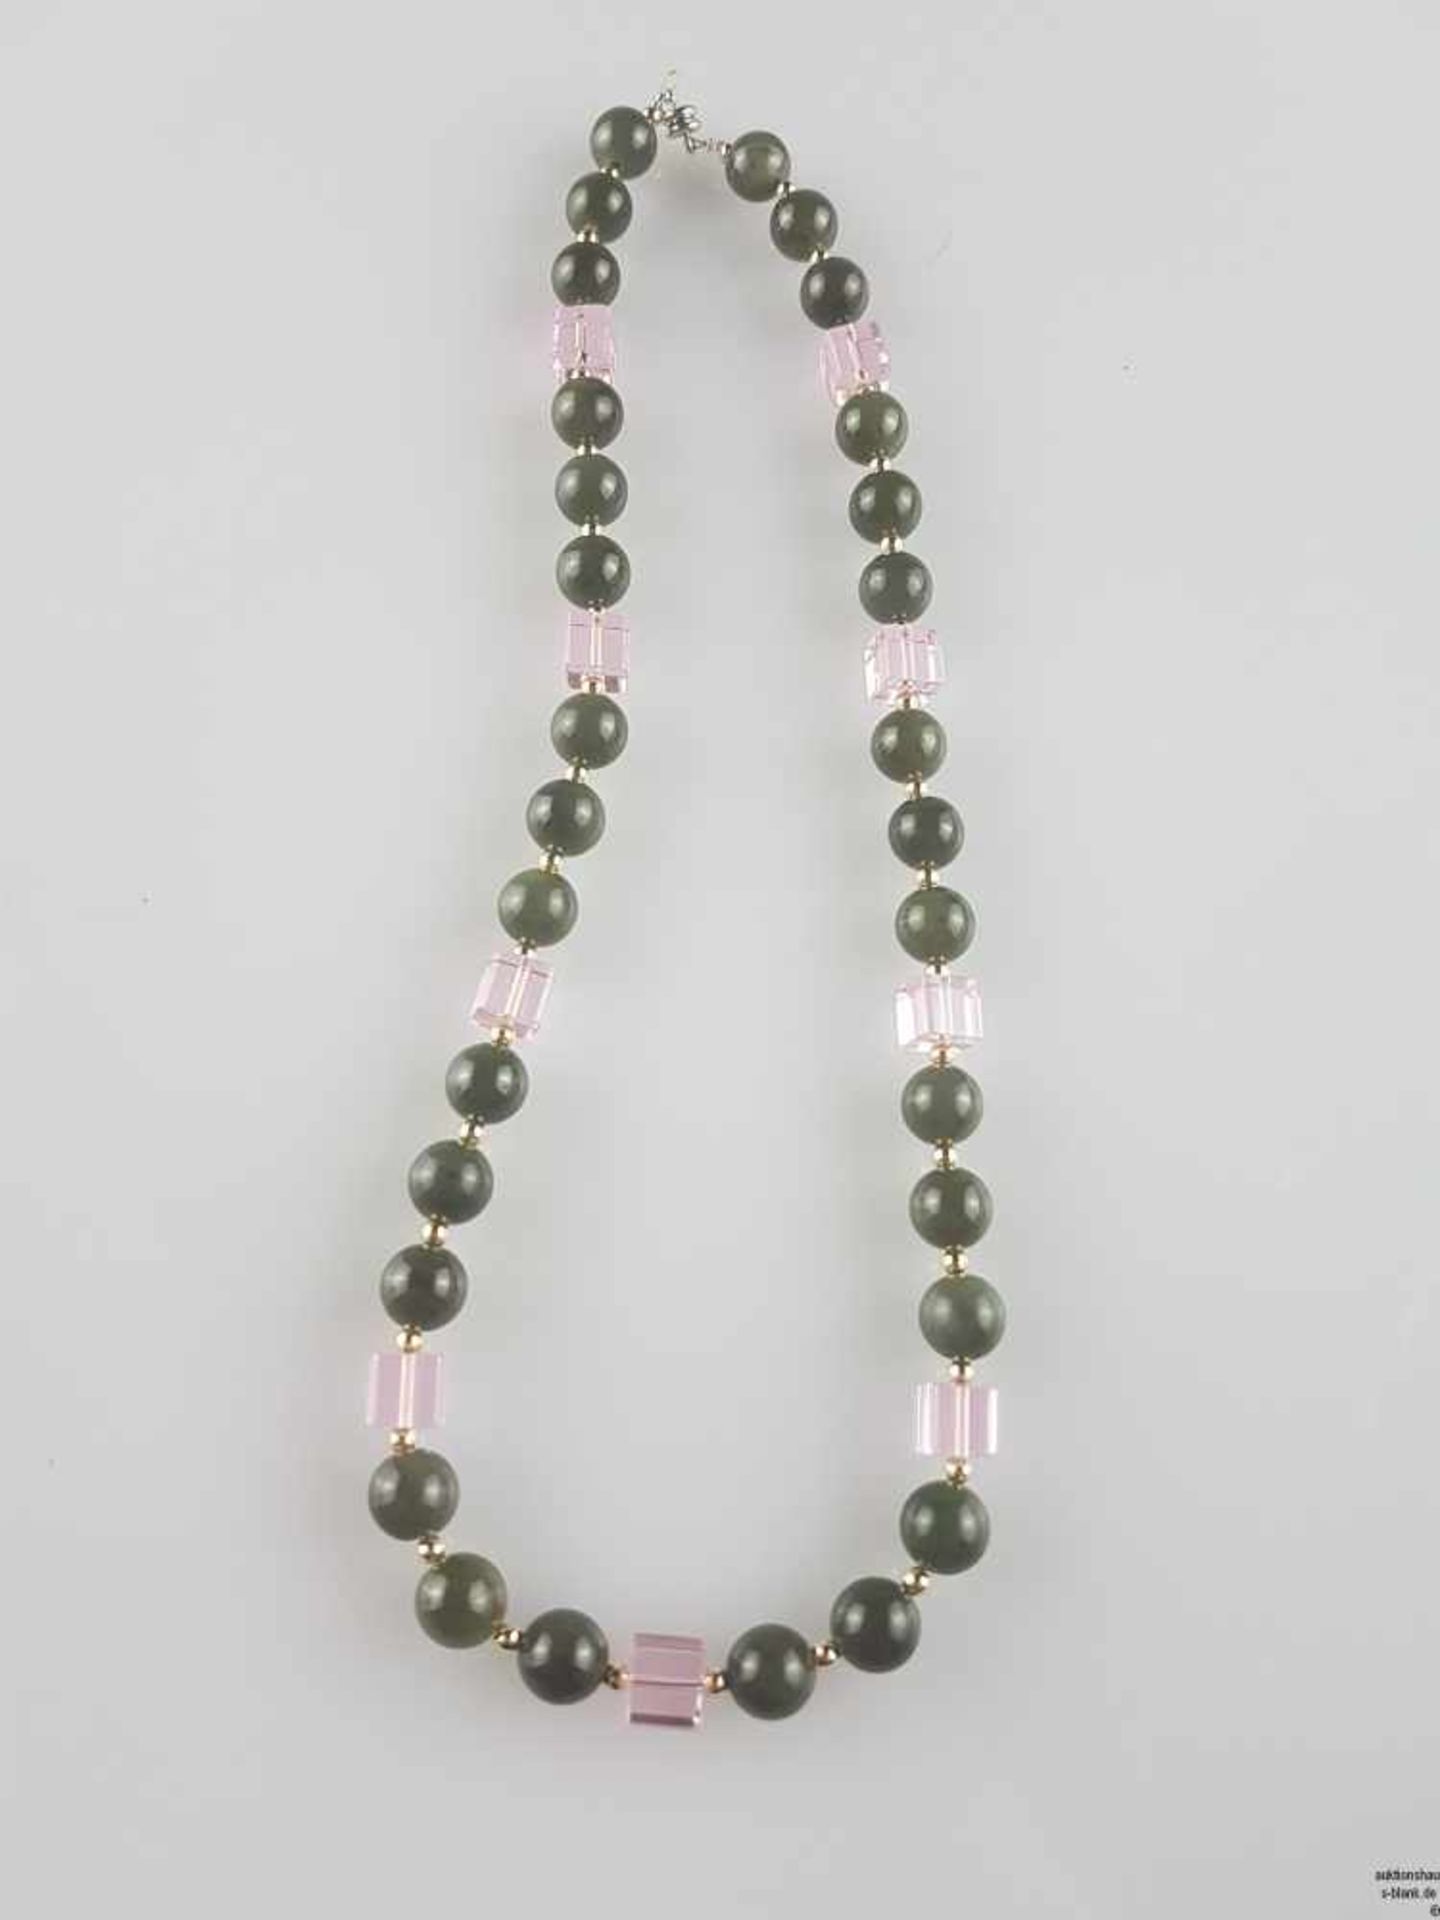 Halskette - 30 dunkelgrüne Jadekugeln sowie 9 roséfarbene Quader aus venezianischem Glas,